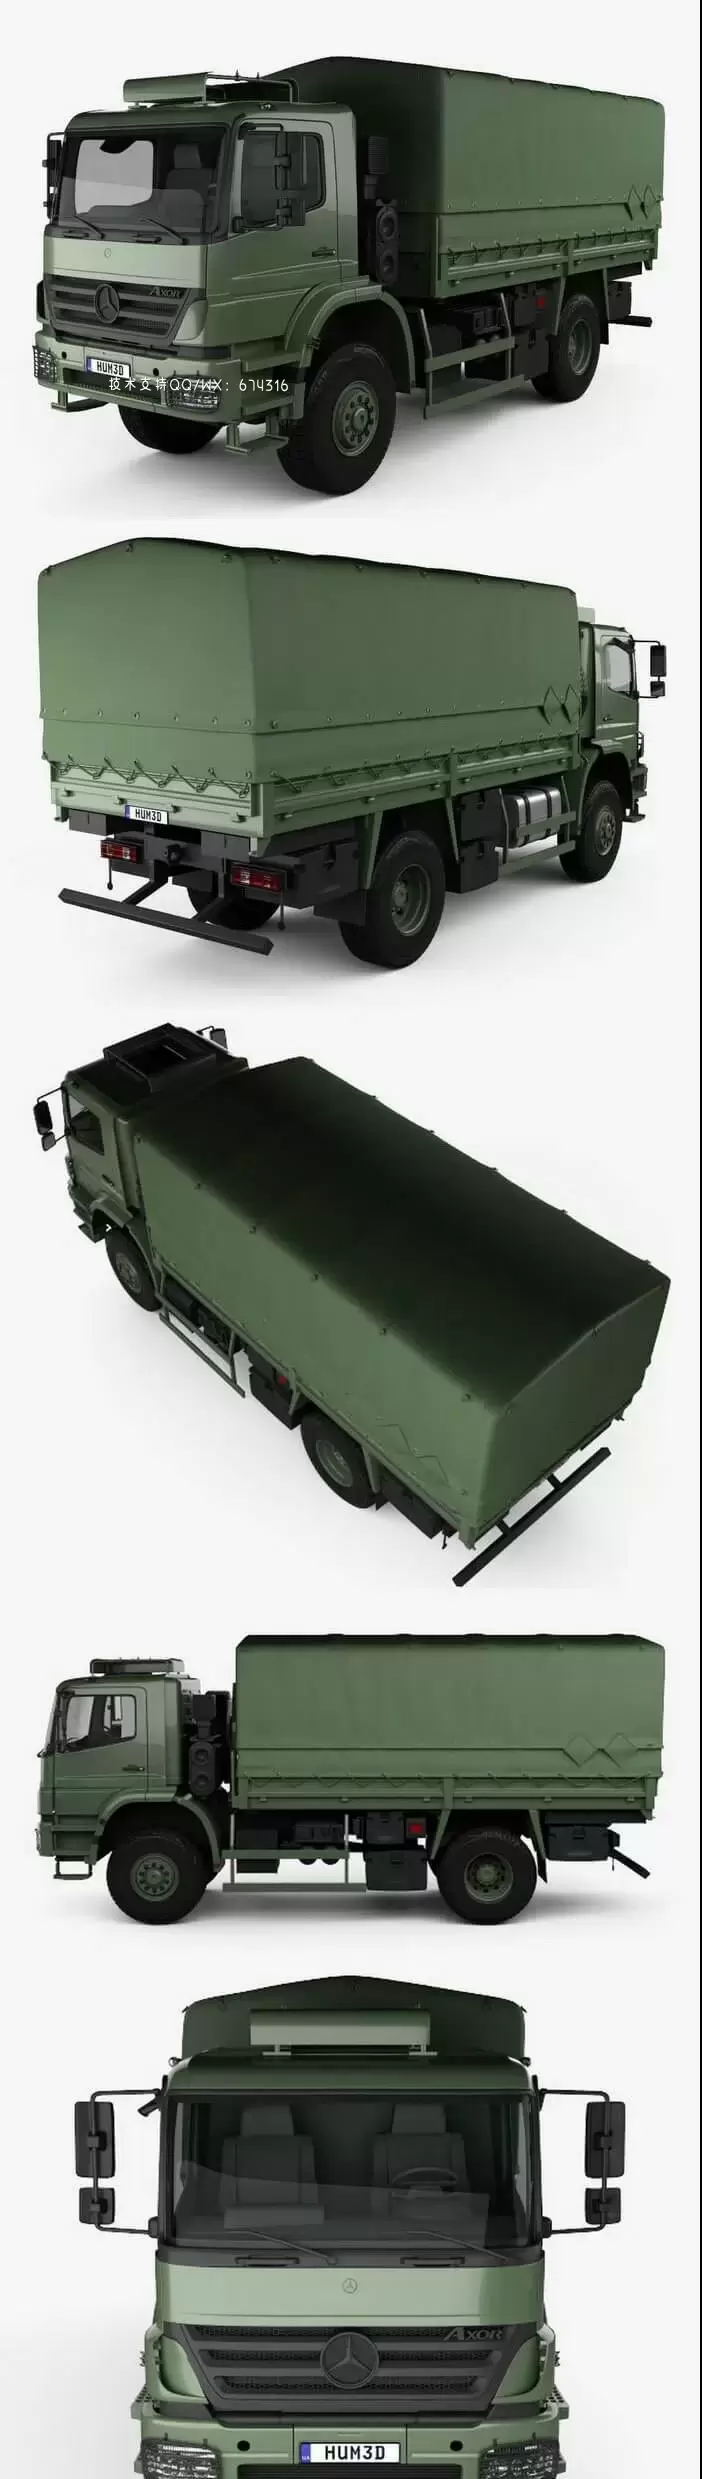 梅赛德斯奔驰 Axor 军用卡车 2005 货车3D模型下载 (MAX,3DS,FBX,OBJ,C4D,LWO)免费下载